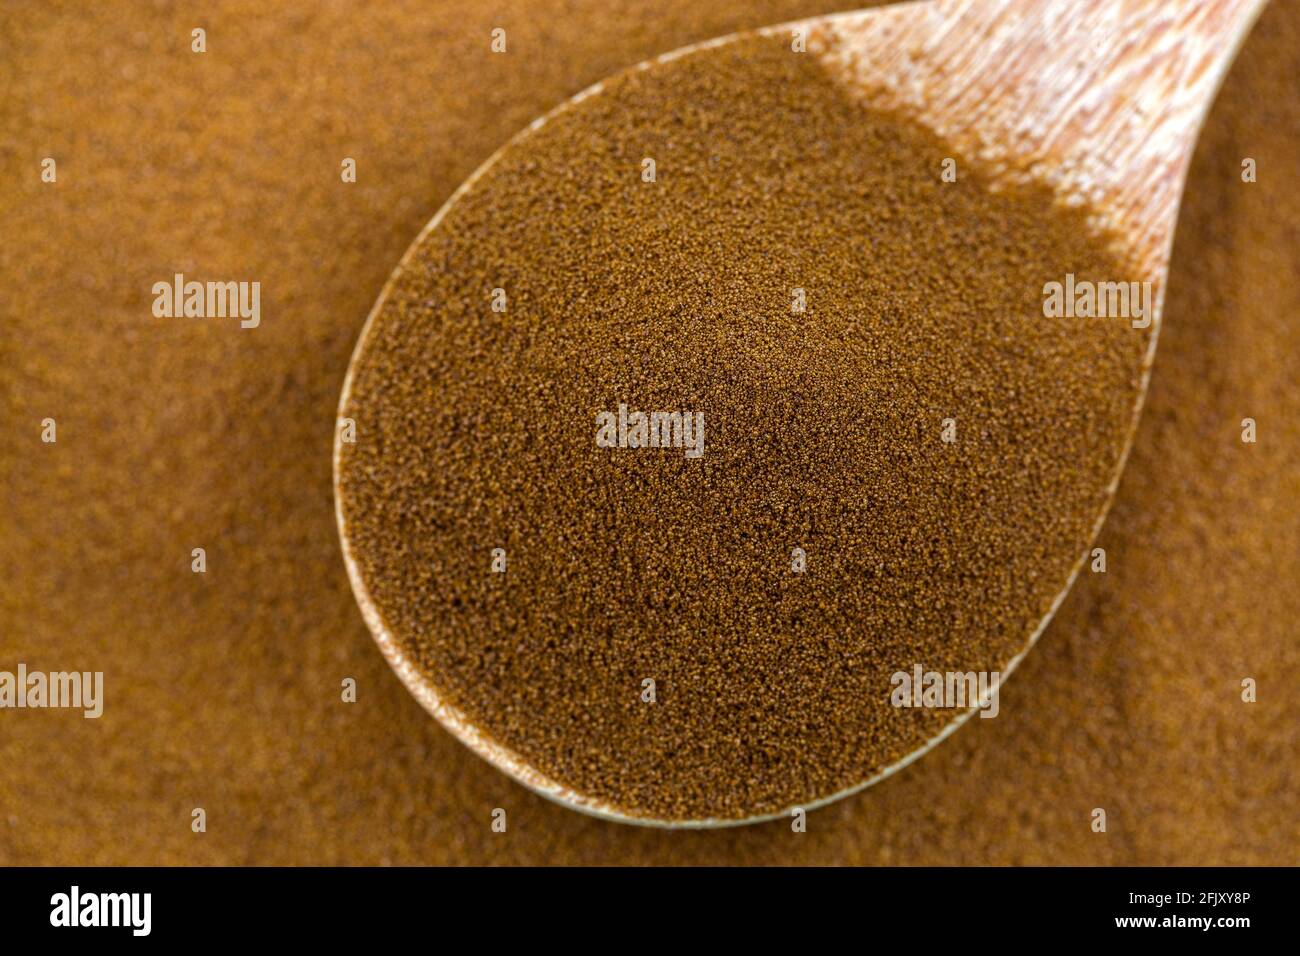 Caffè secco puro e istantaneo africano spray di robusta e chicchi di caffè arabica in cucchiaio di legno, vista dall'alto con texture closeup Foto Stock